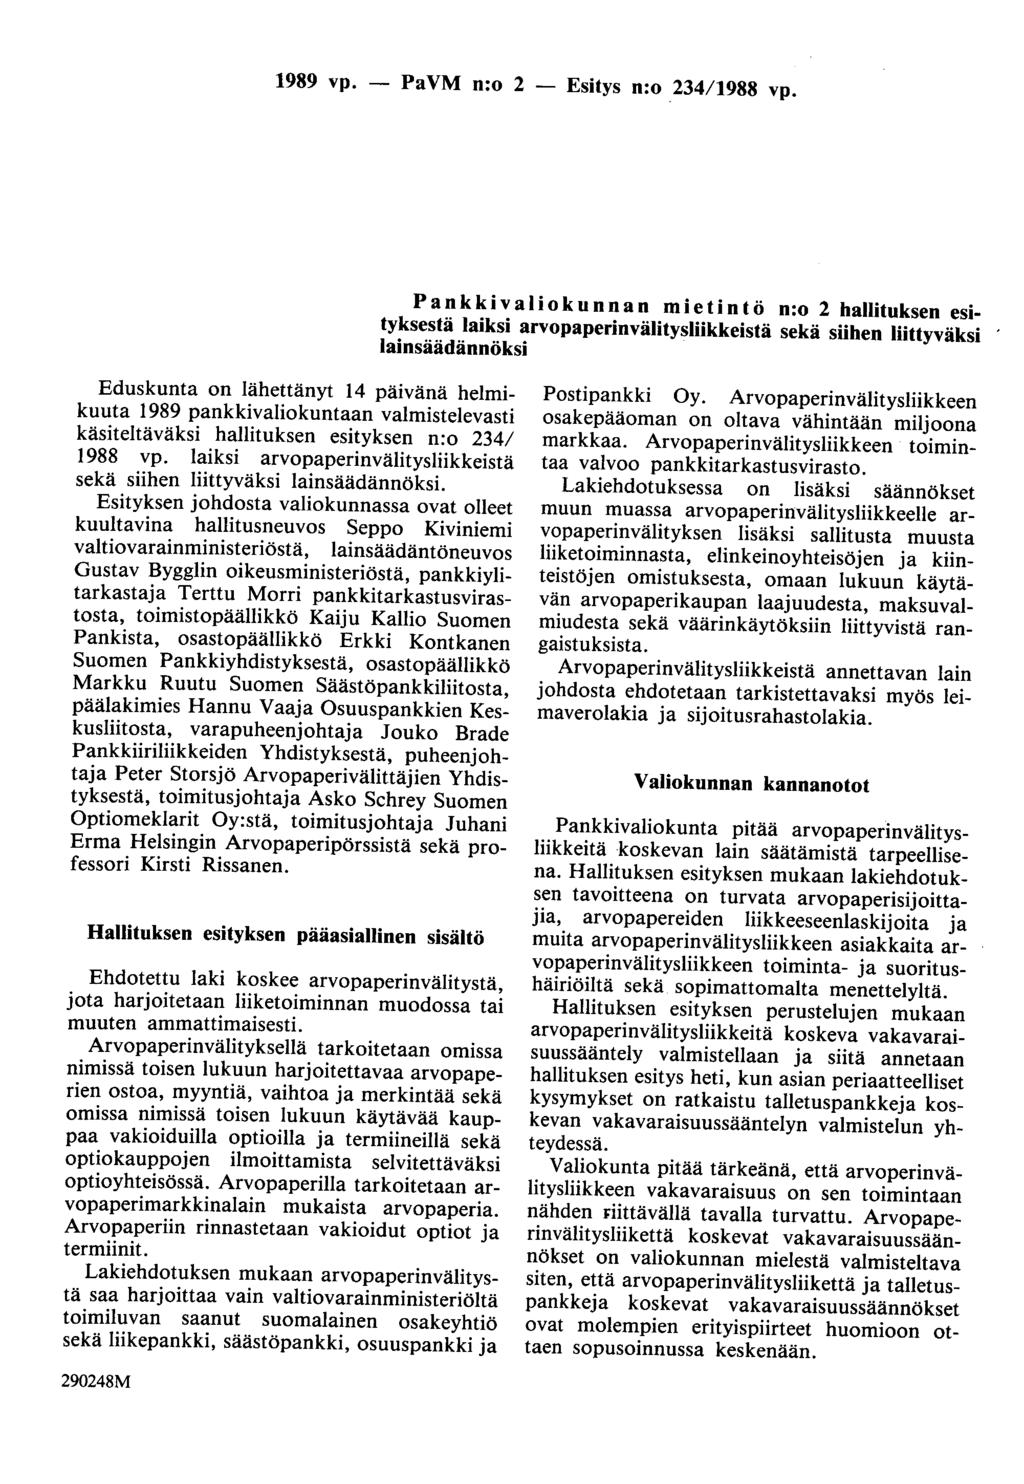 1989 vp. - PaVM n:o 2 - Esitys n:o 234/1988 vp.